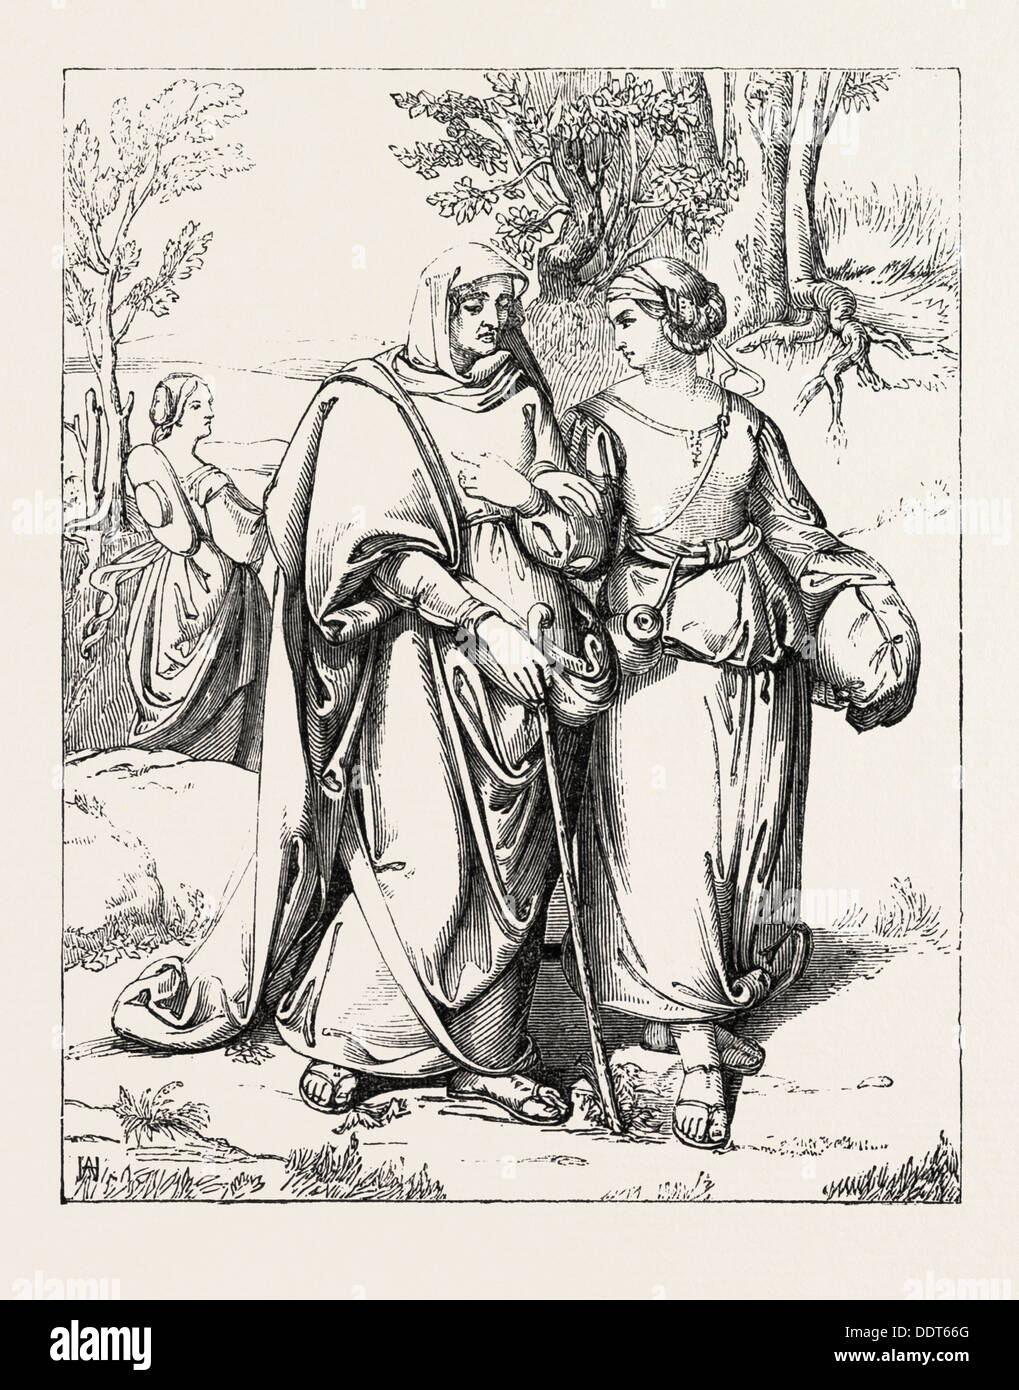 RUTH und NAOMI, gemalt von A. HOPFGARTEN, AUGUST FERDINAND HOPFGARTEN, 1807-1896, 1851 Gravur Stockfoto